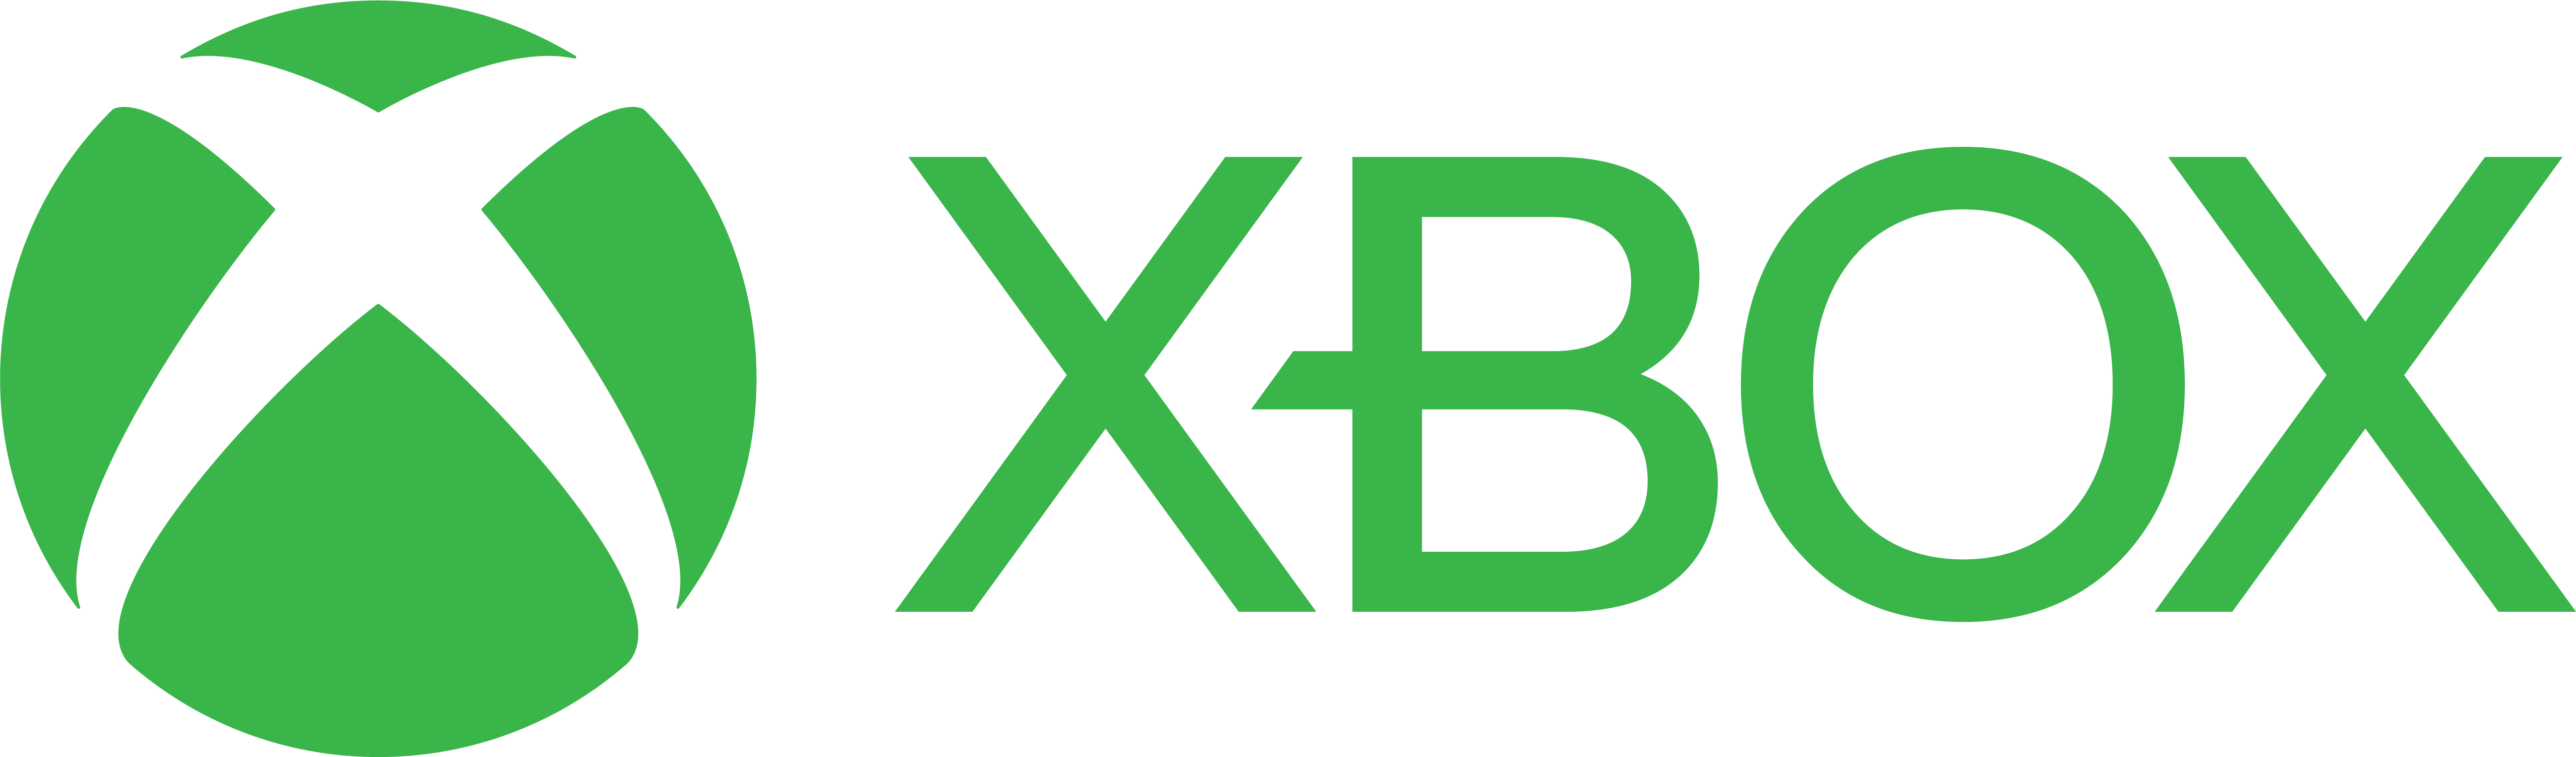 Xbox Install